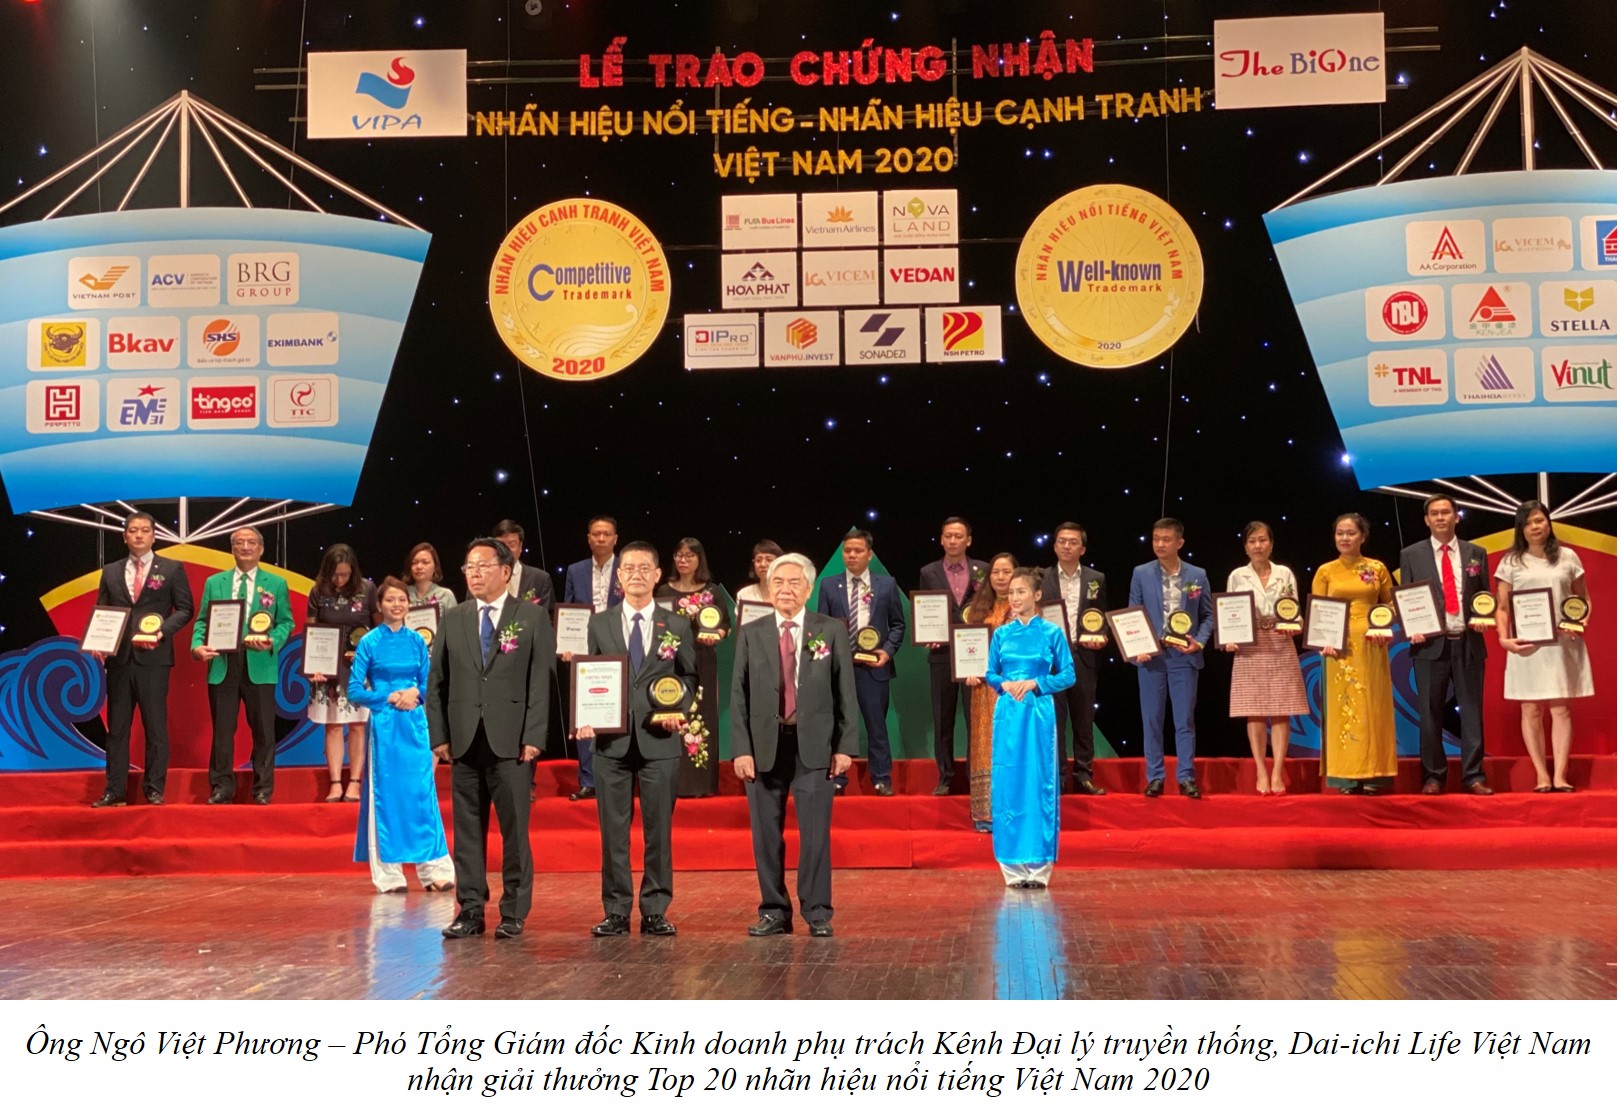 Dai-ichi Life Việt Nam vinh dự đạt danh hiệu “Top 20 Nhãn hiệu nổi tiếng Việt Nam 2020”